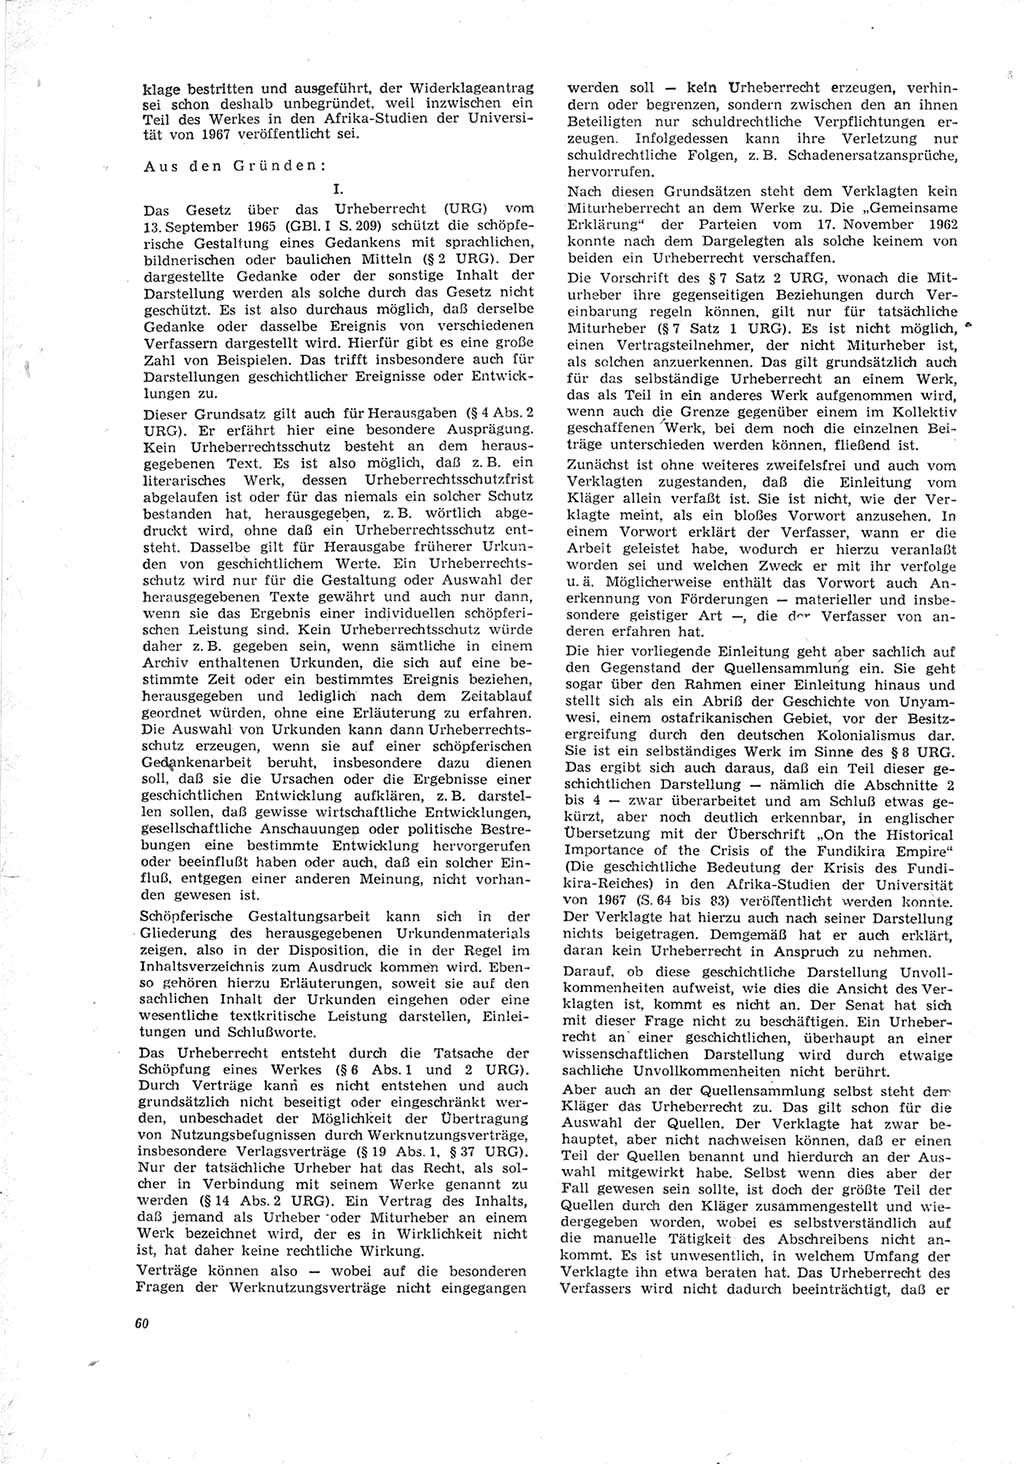 Neue Justiz (NJ), Zeitschrift für Recht und Rechtswissenschaft [Deutsche Demokratische Republik (DDR)], 23. Jahrgang 1969, Seite 60 (NJ DDR 1969, S. 60)